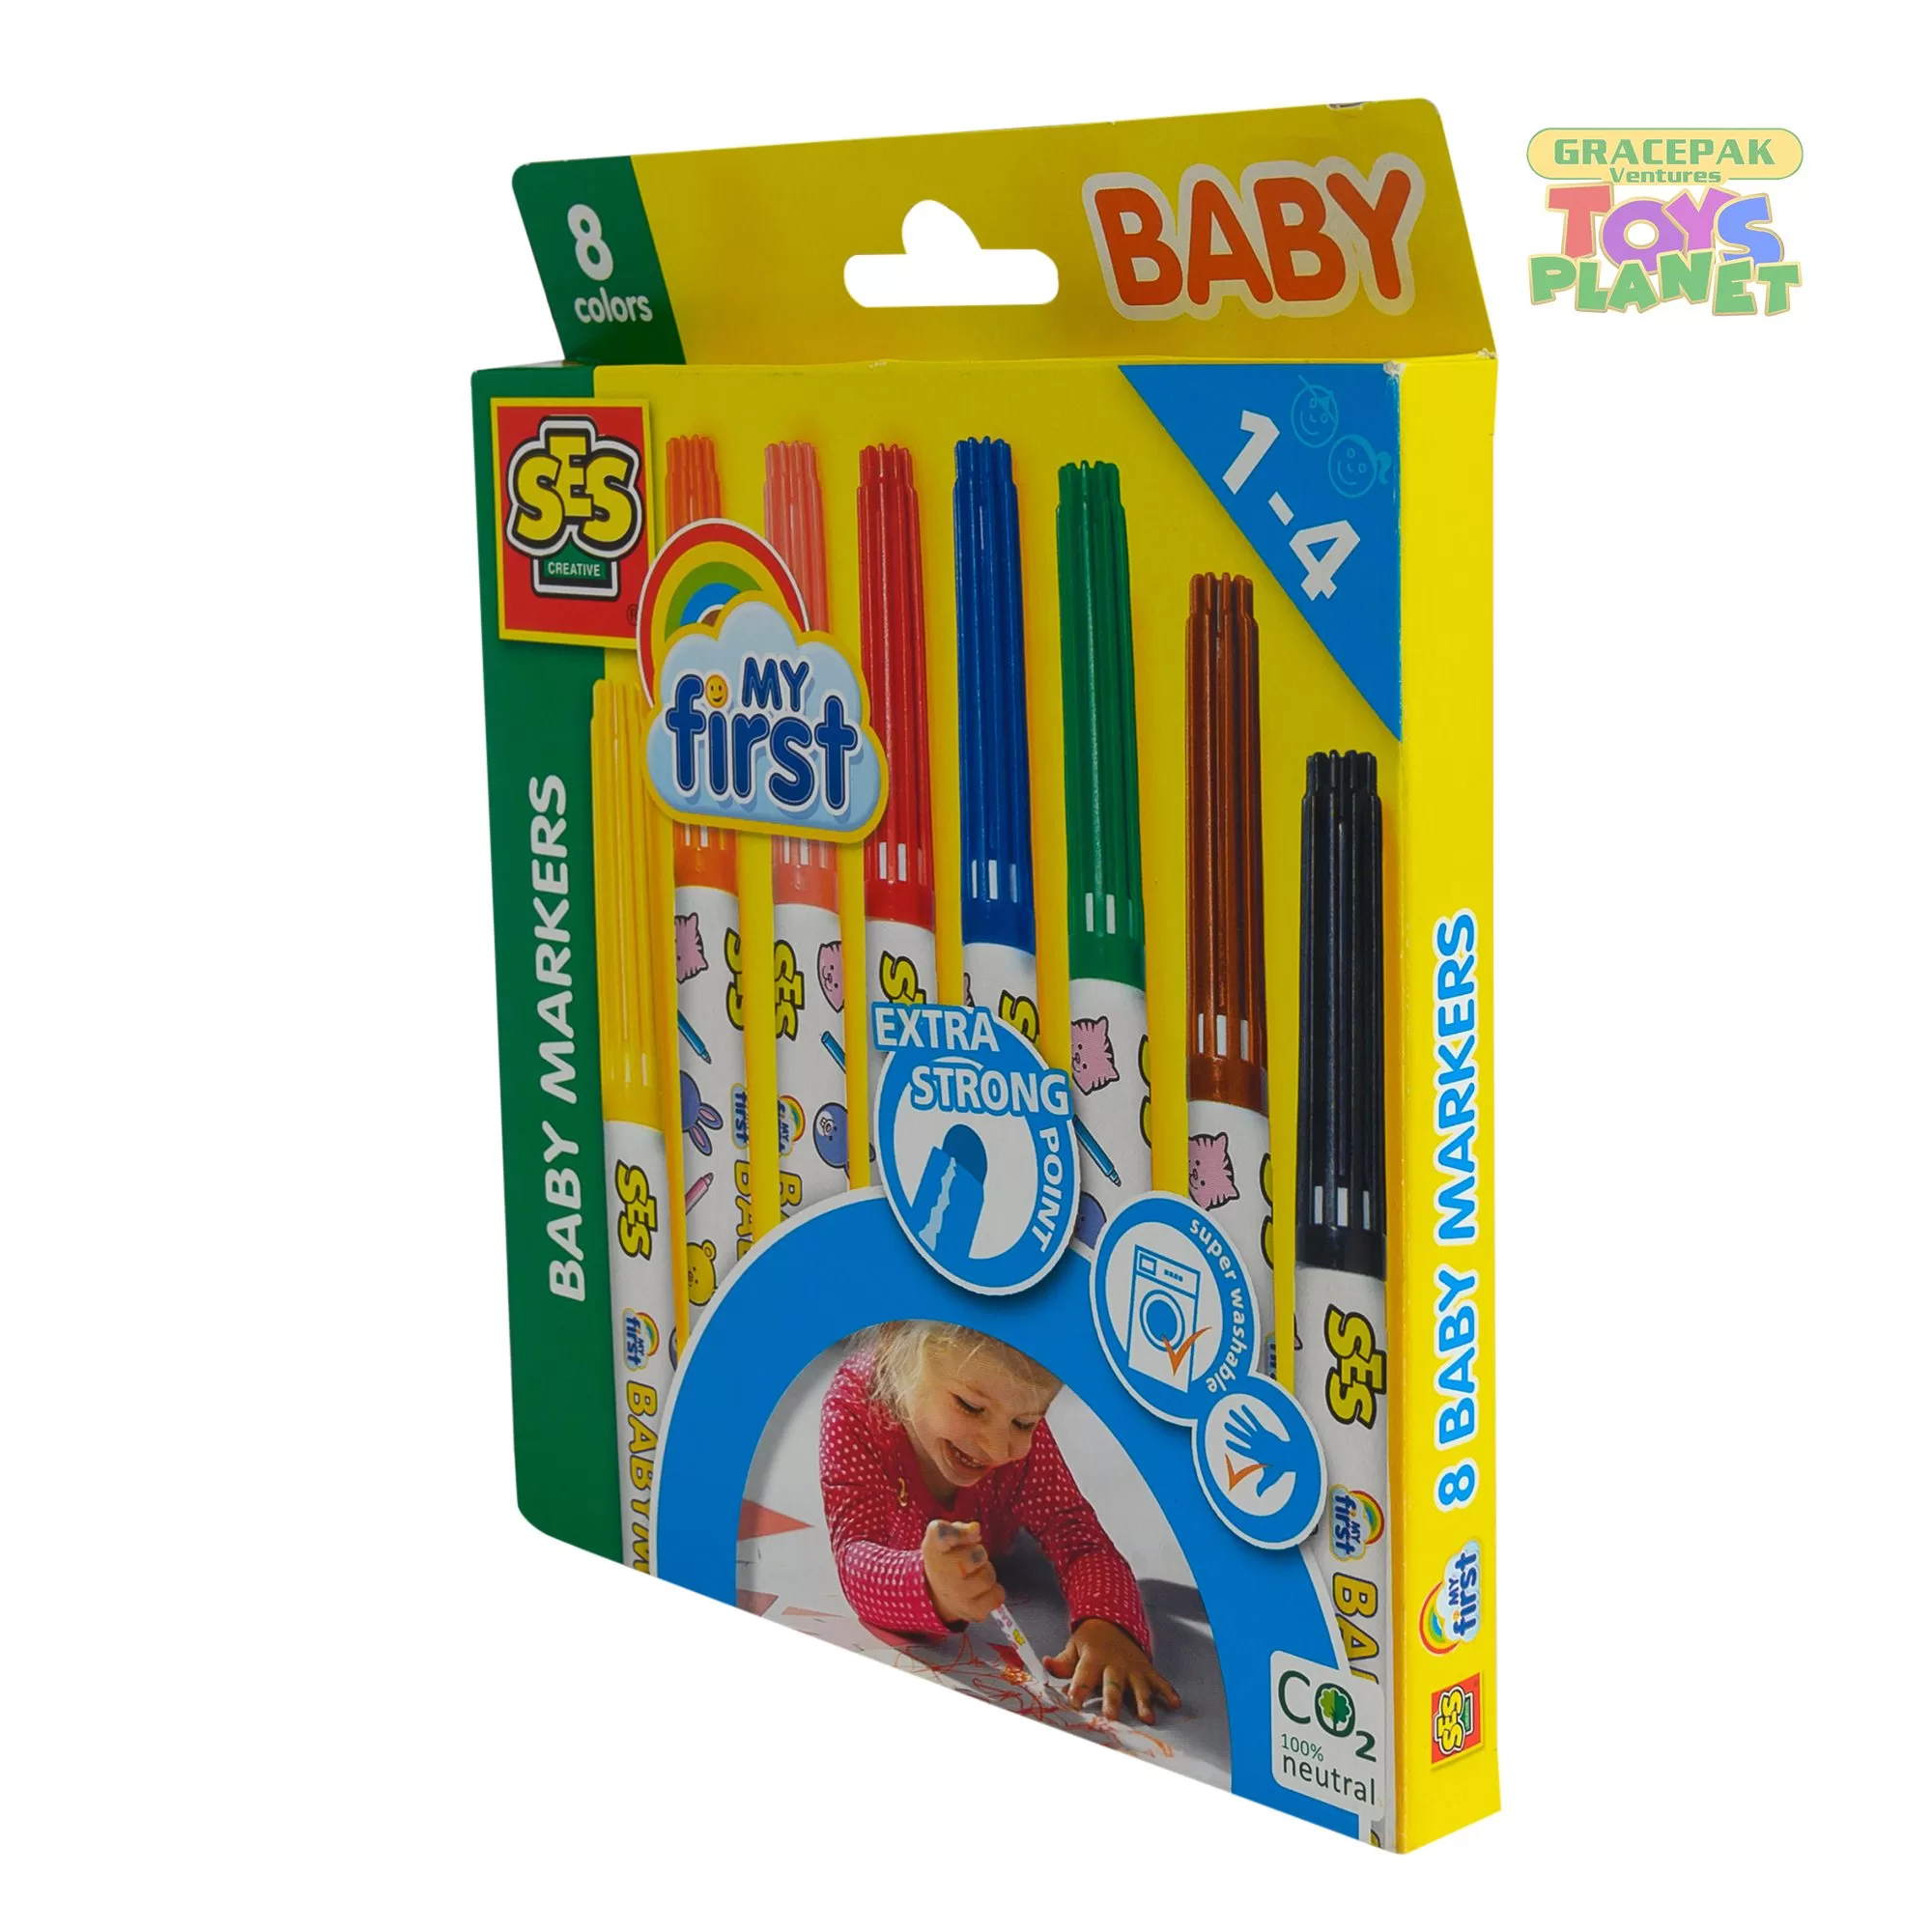 terugvallen schrijven Een deel My First Baby Markers 8 Colours | Gracepak Ventures-Toys Planet